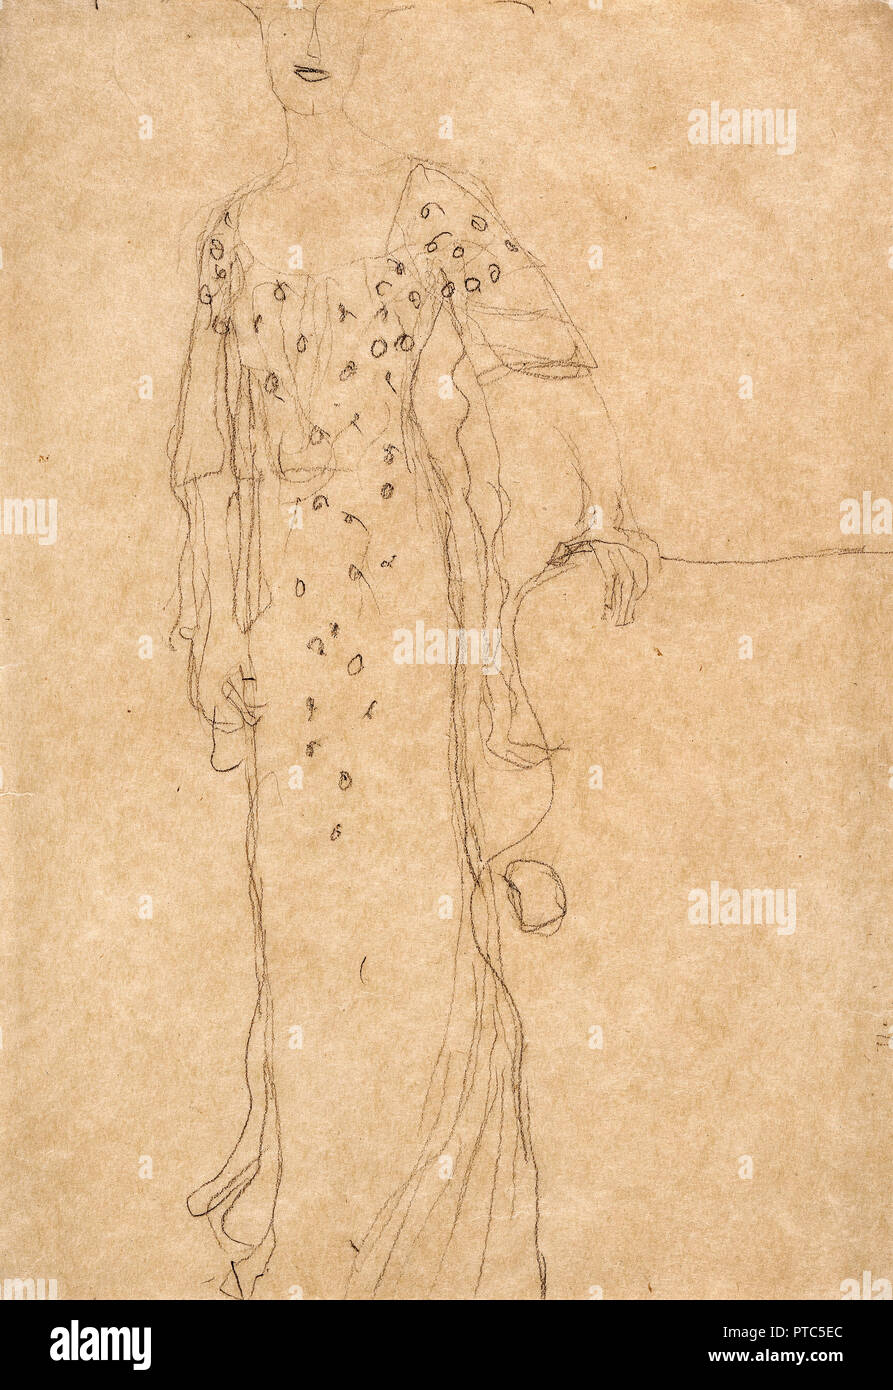 Gustav Klimt, Studie für Porträt der Adele Bloch-Bauer I 1903 Kohle auf Papier, das Jüdische Museum, New York City, USA. Stockfoto